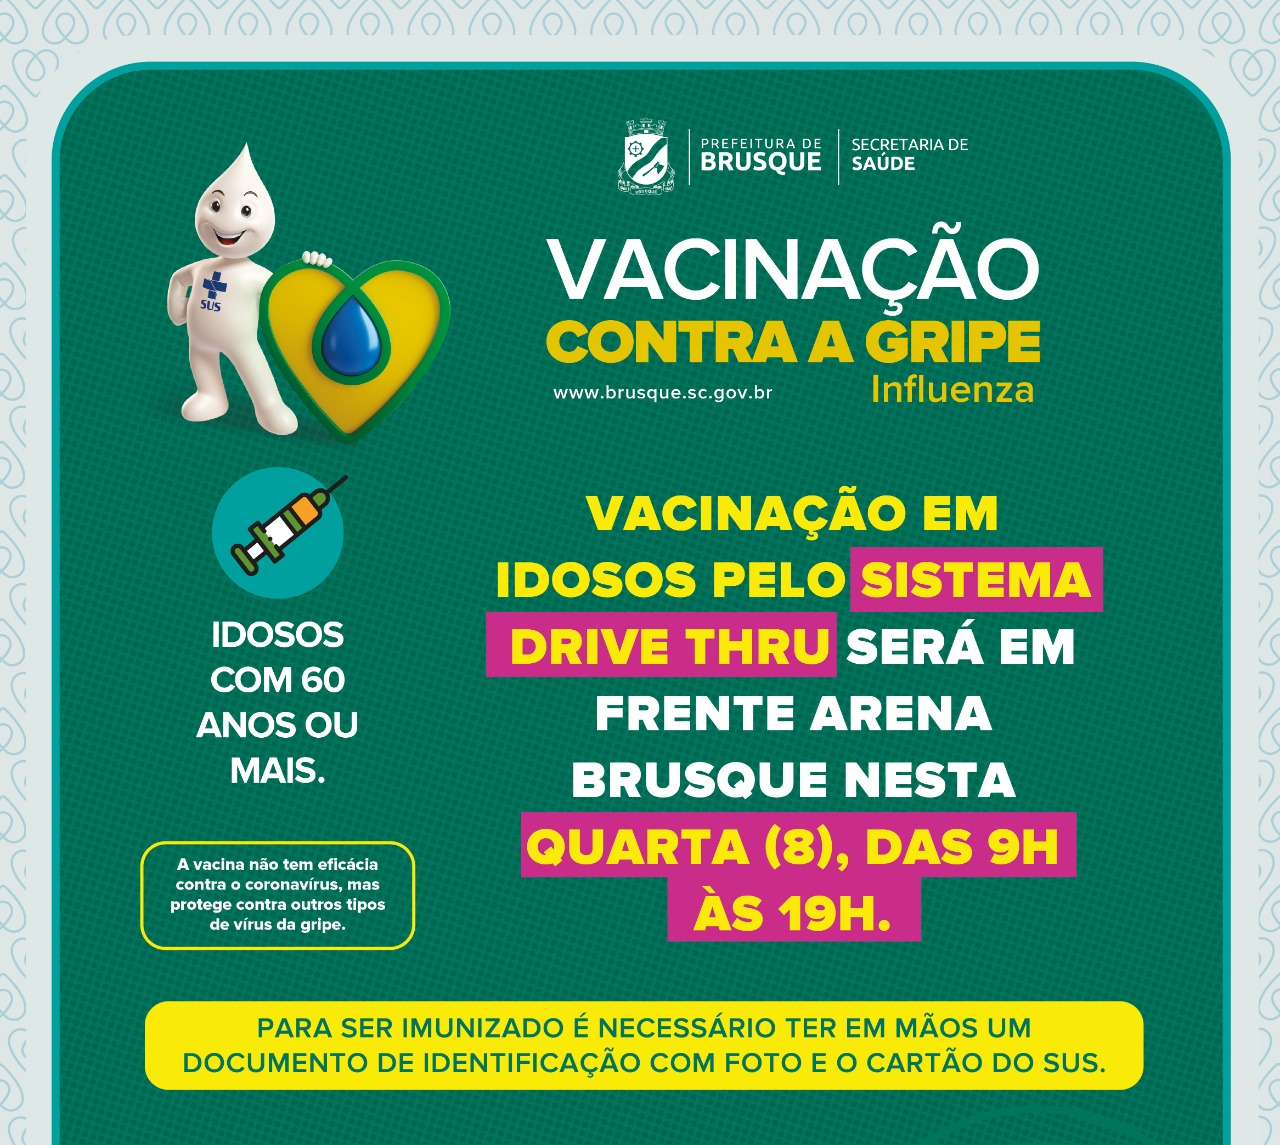 MUDANÇA DE LOCAL: Vacinação em idosos pelo sistema drive thru será em frente Arena Brusque nesta quarta (8)